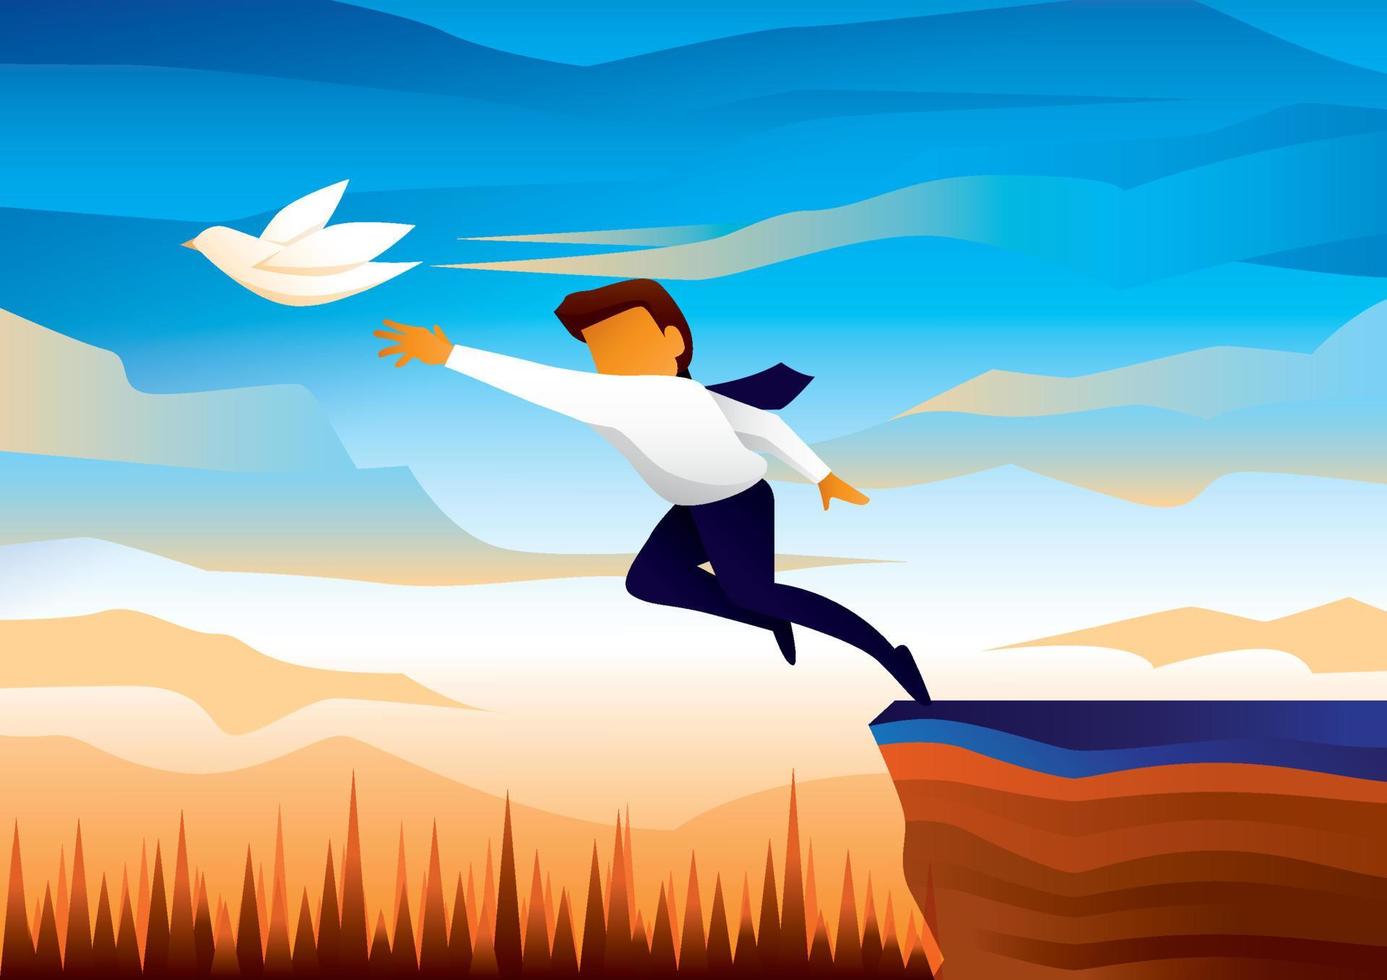 illustration vektor fil. arbetaren förföljer frihetens fågel och han är på väg att falla från klippan. denna bild innebär att man riskerar att sluta jobba.